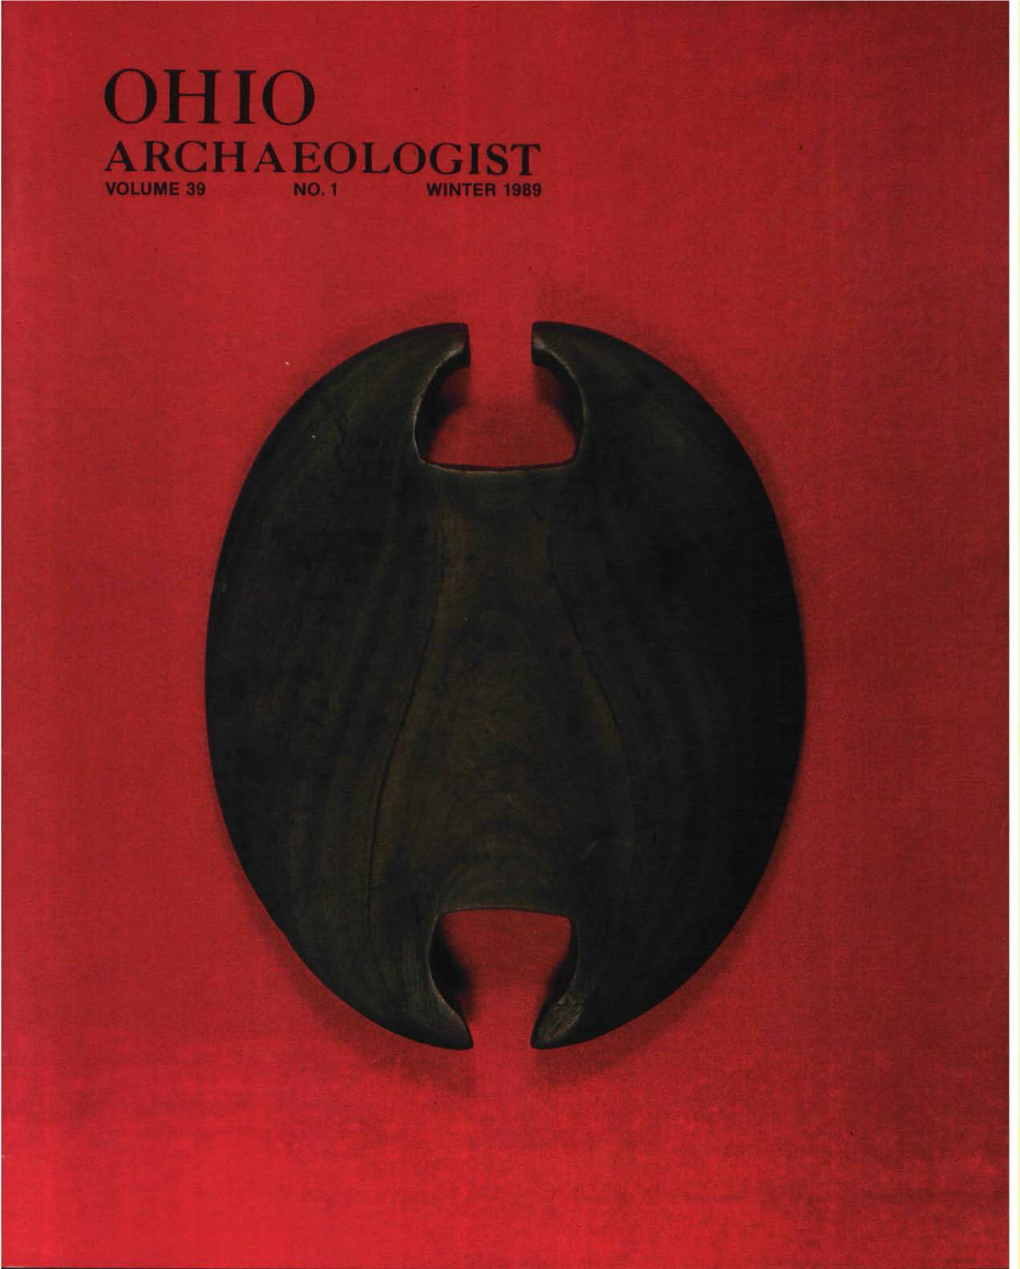 Ohio Archaeologist Volume 39 No